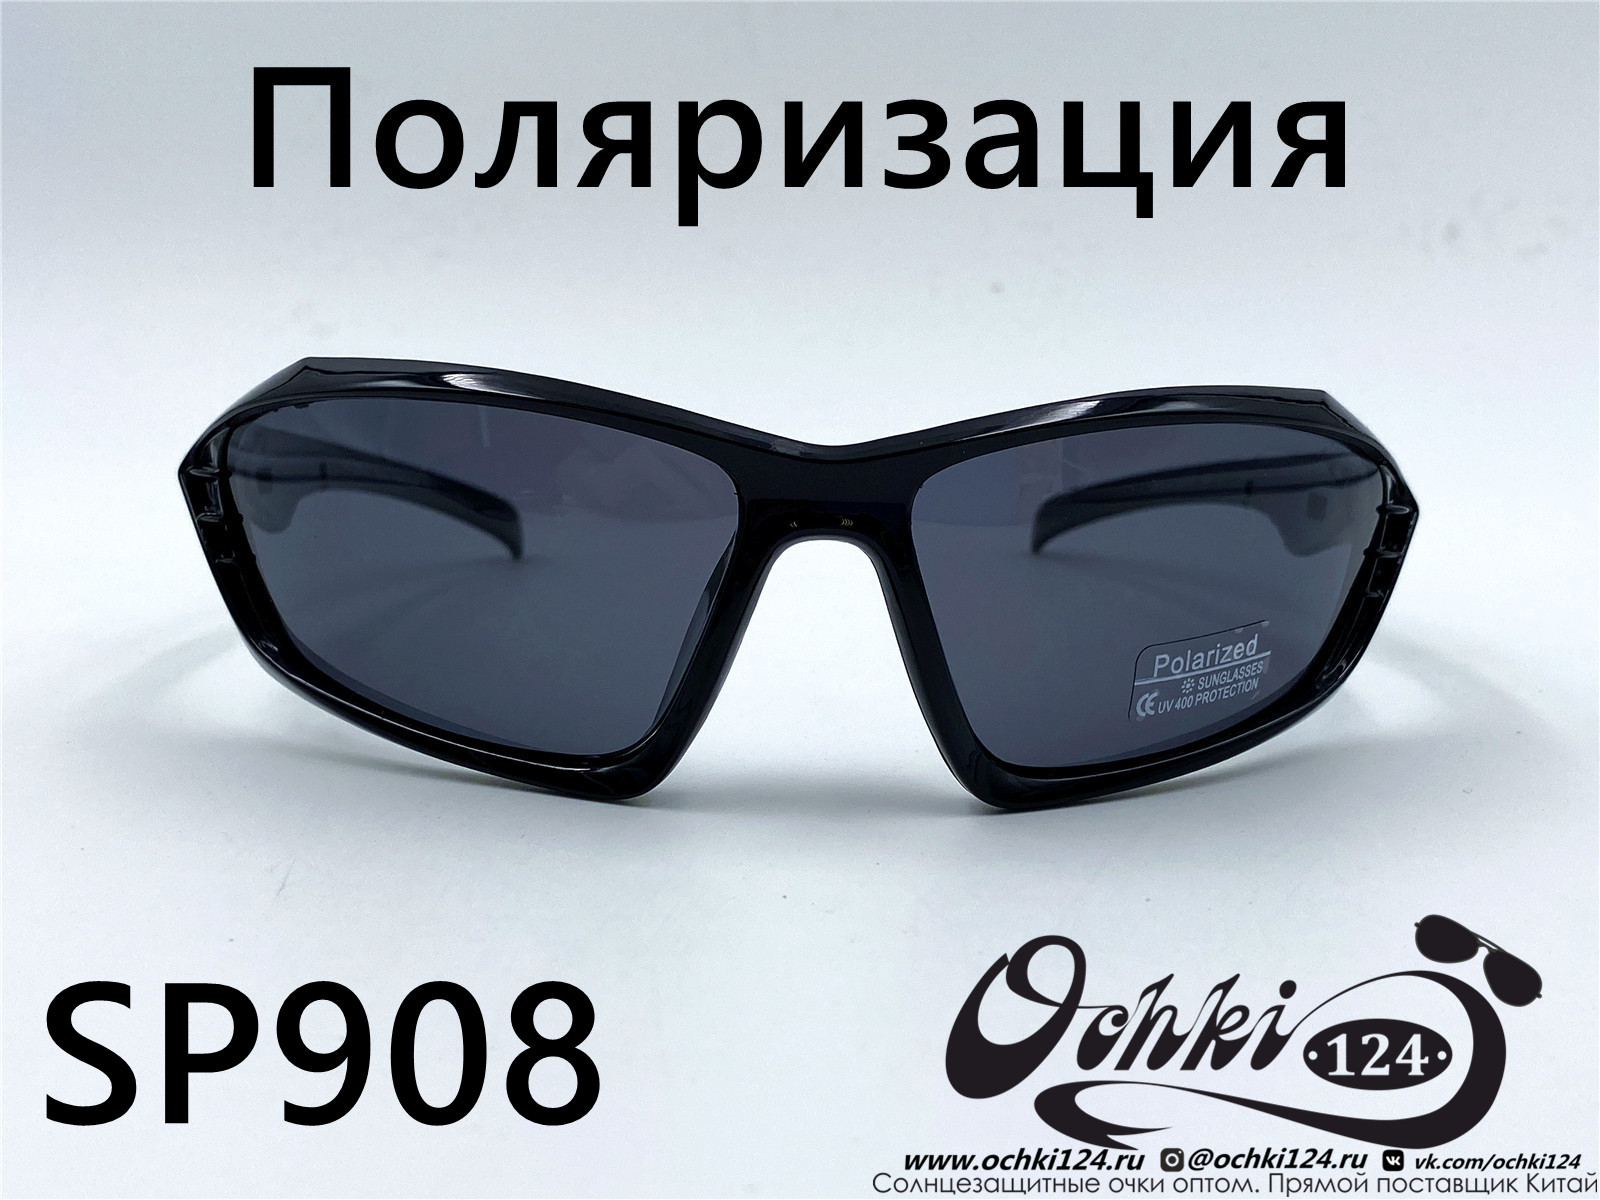  Солнцезащитные очки картинка 2022 Мужские Поляризованные Спорт Materice SP908-5 